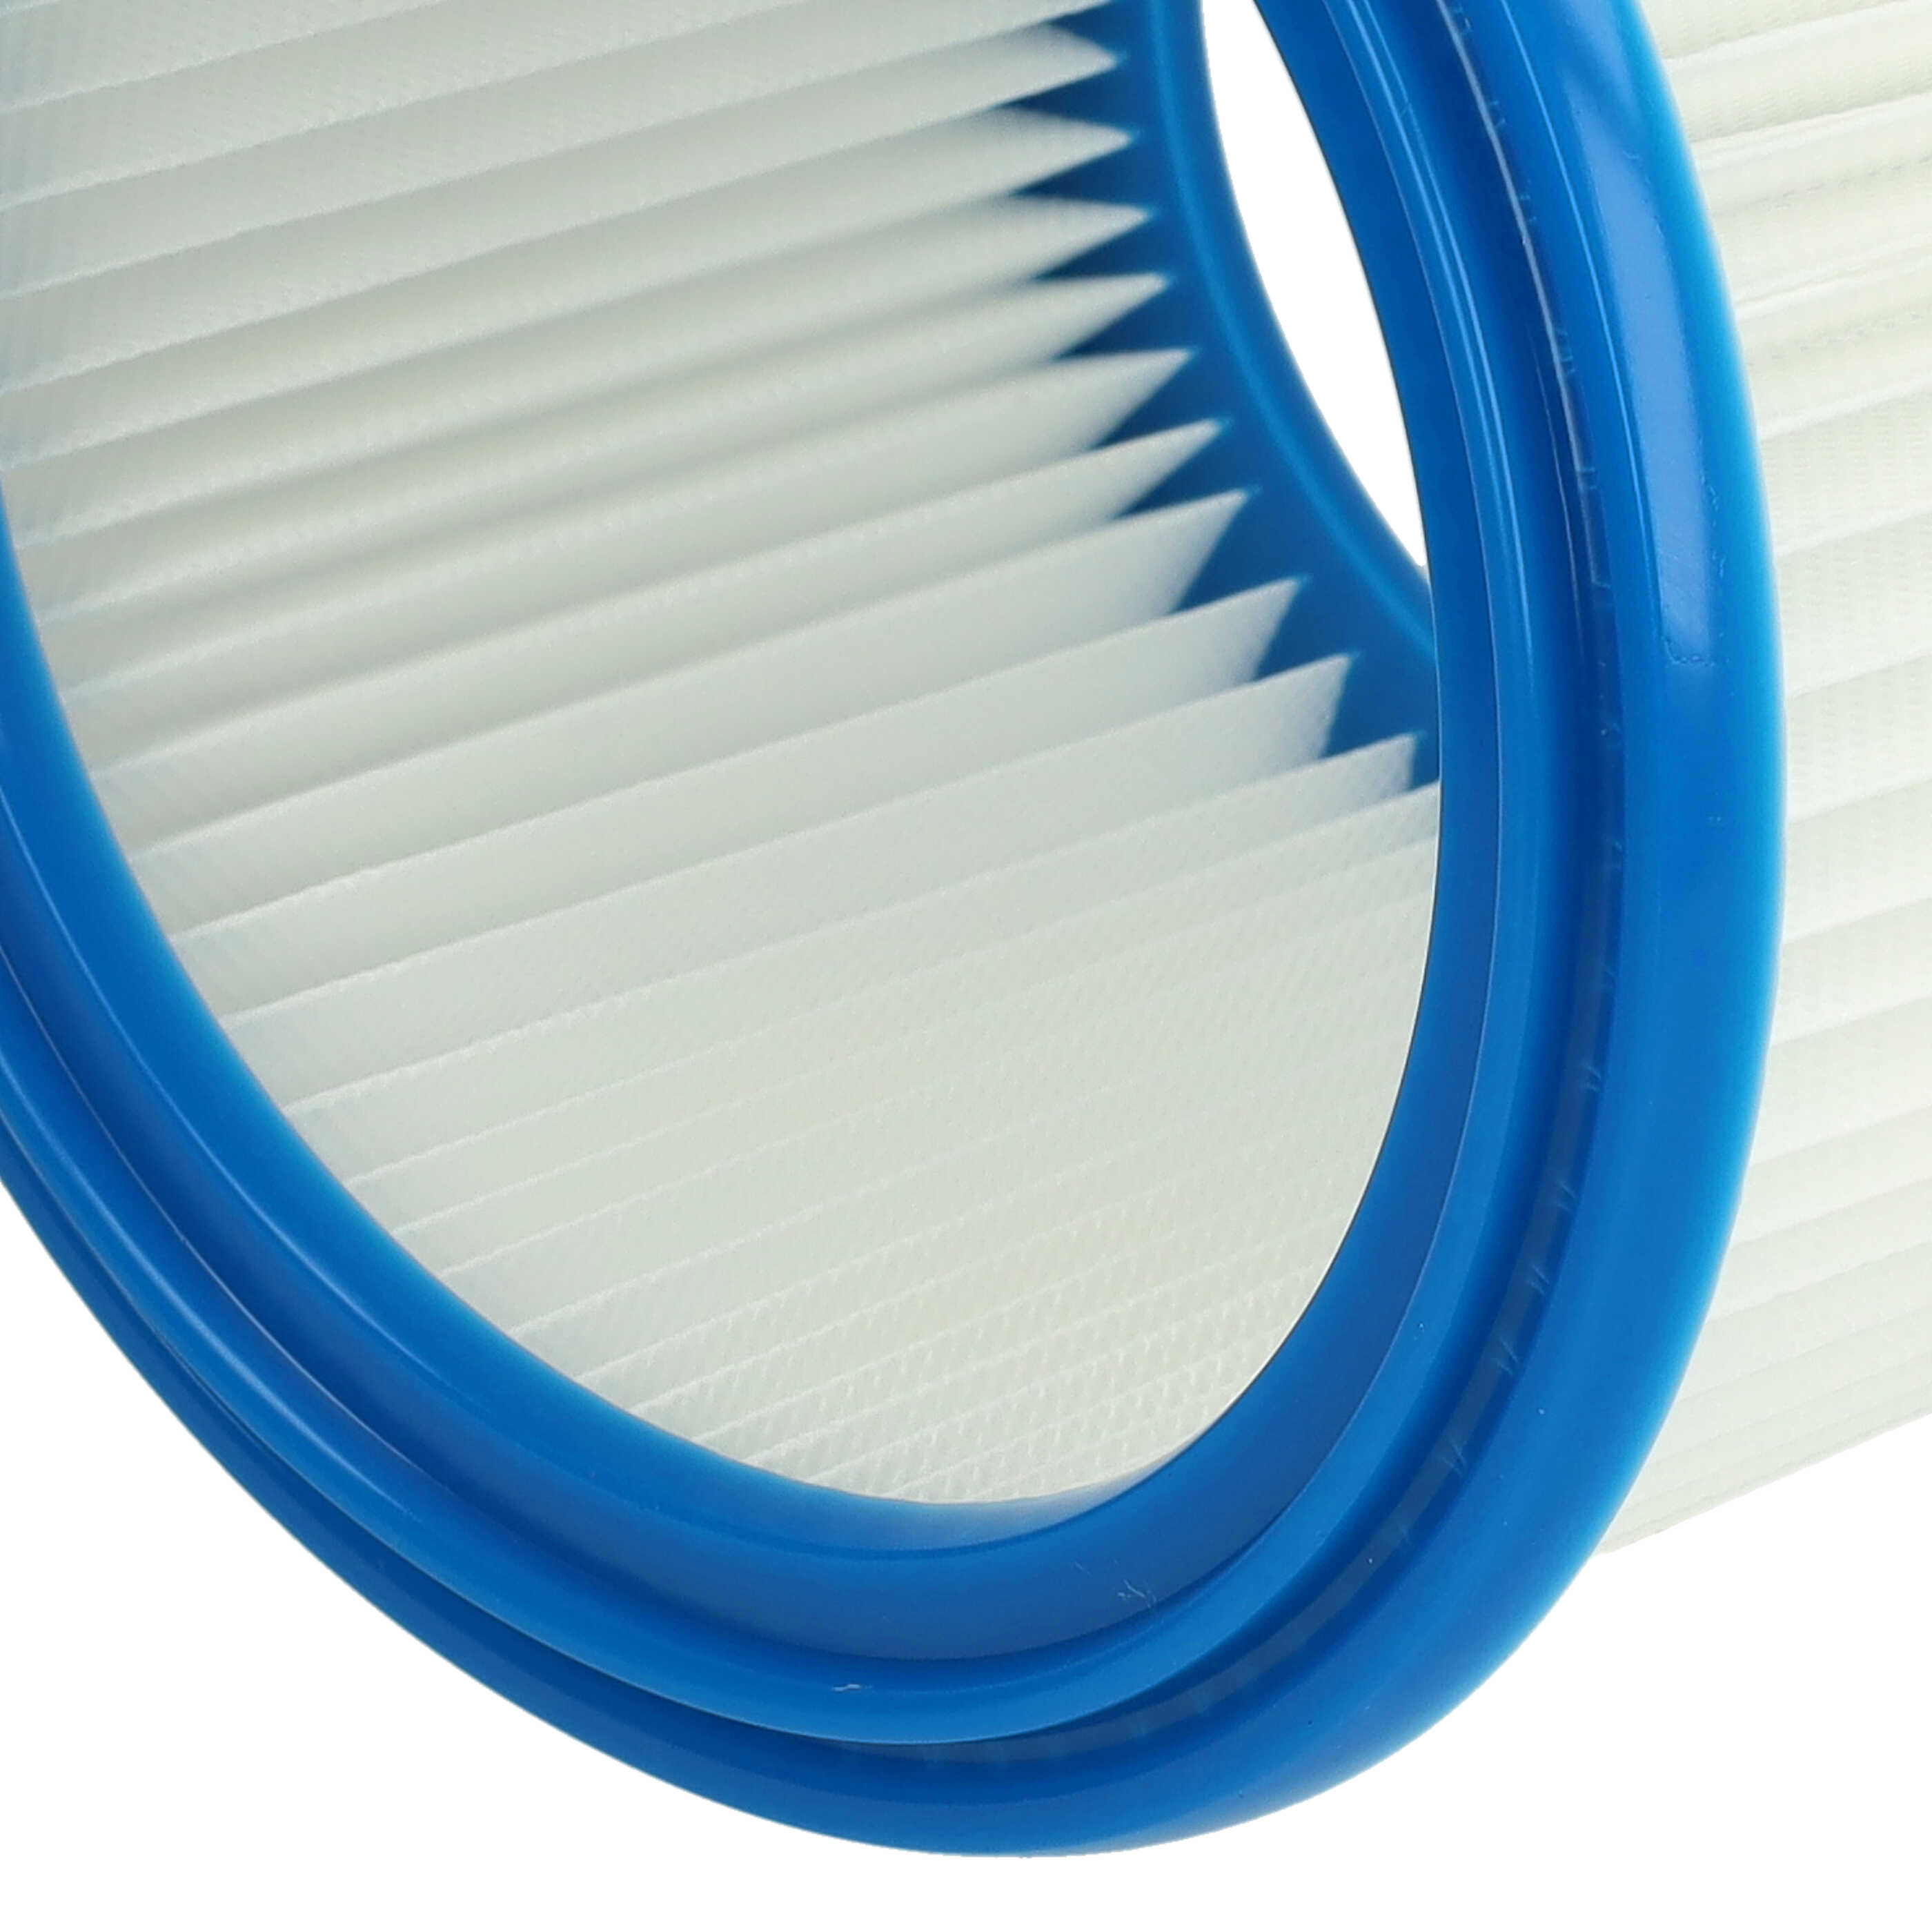 Filtro reemplaza Bosch 2607432024 para aspiradora - filtro redondo, blanco / azul